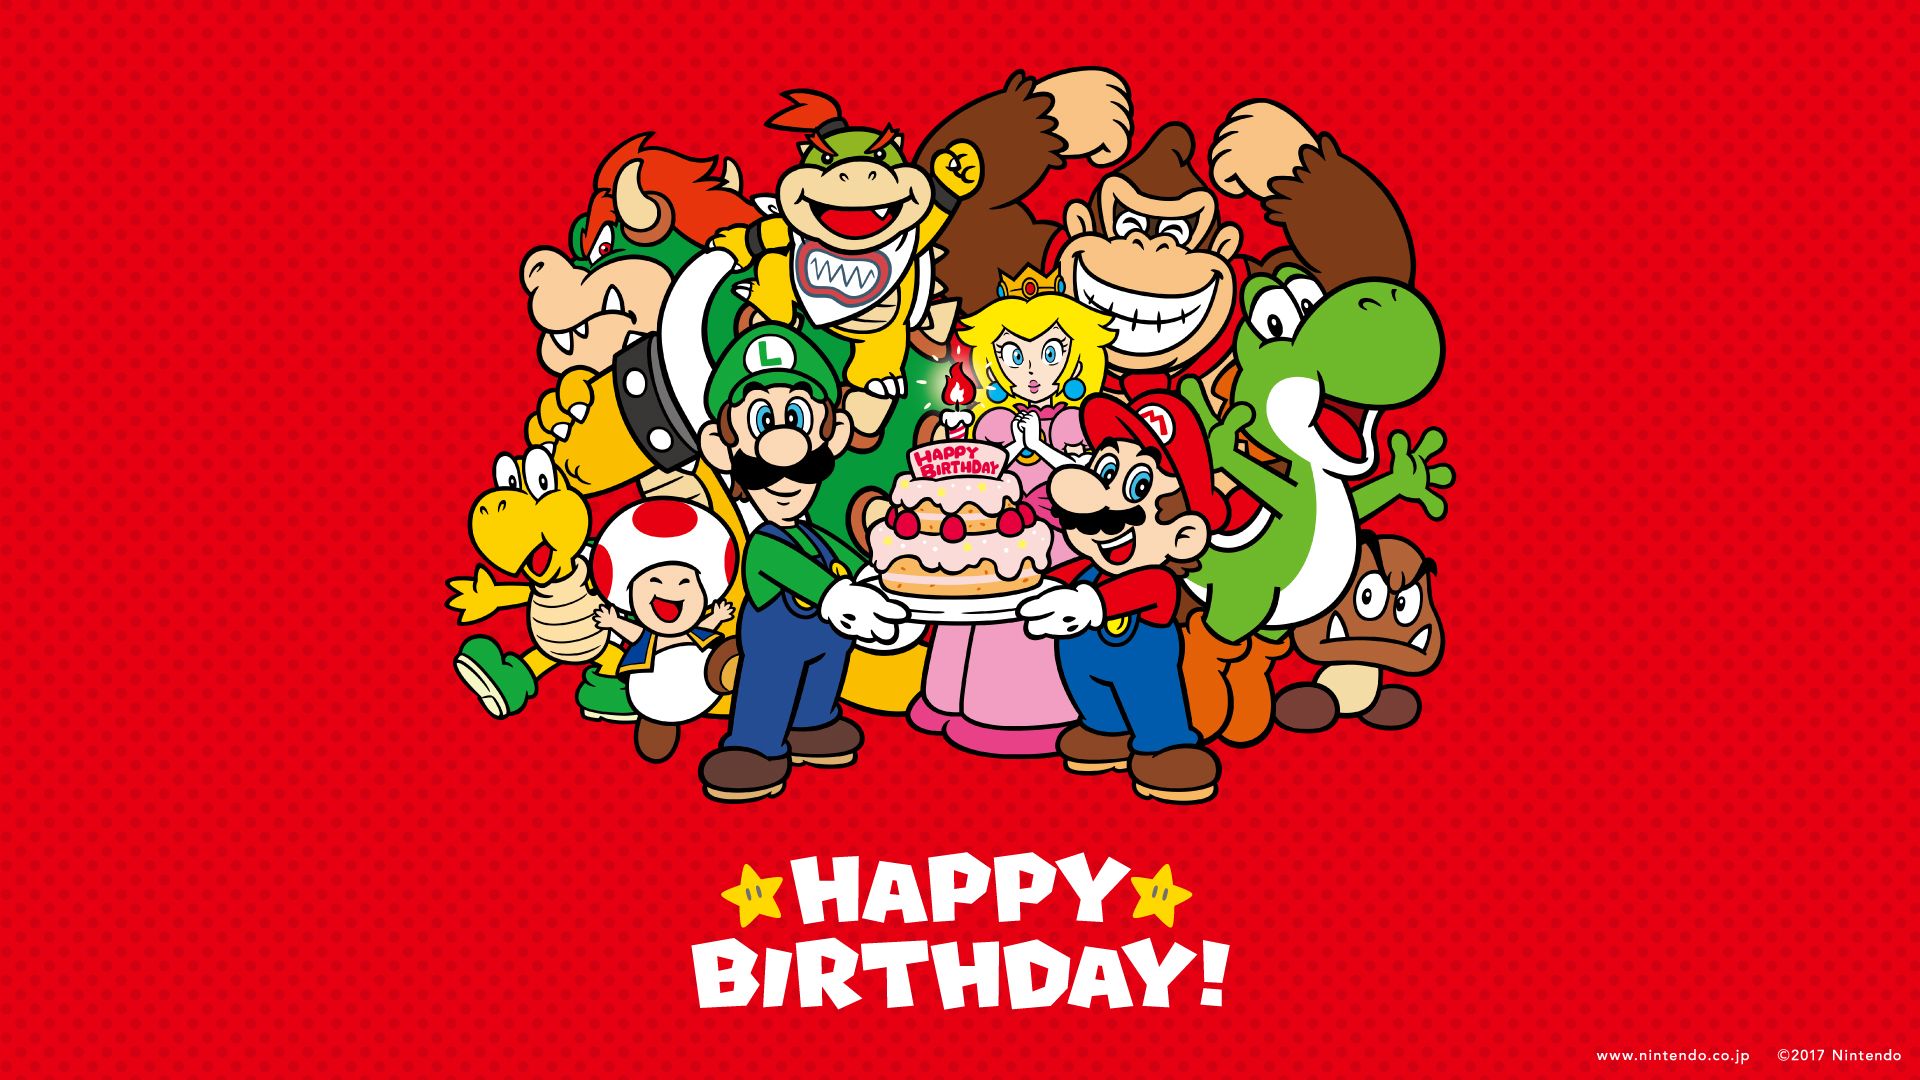 Nintendo releases Super Mario Happy Birthday wallpaper